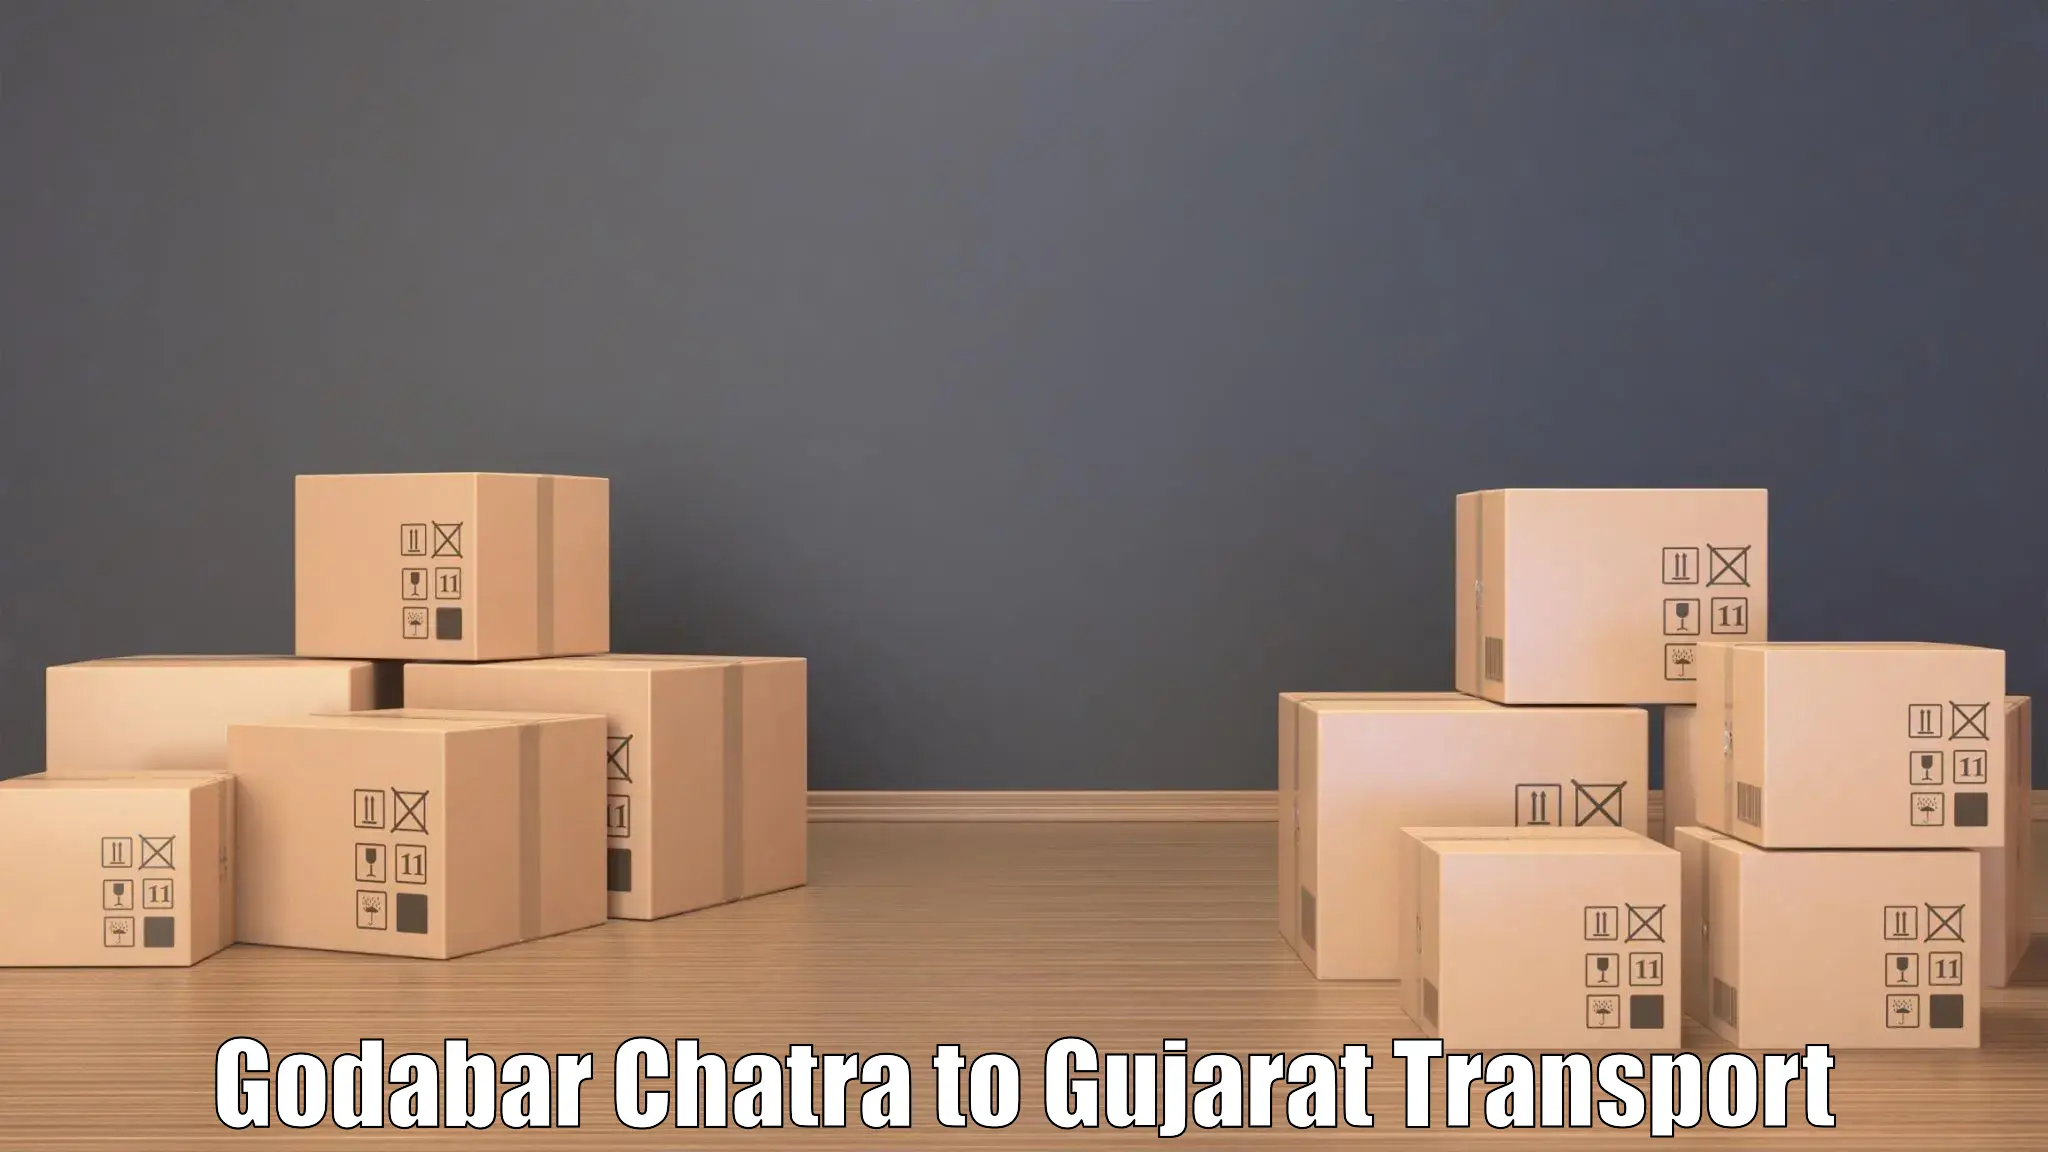 Transportation solution services Godabar Chatra to Nasvadi